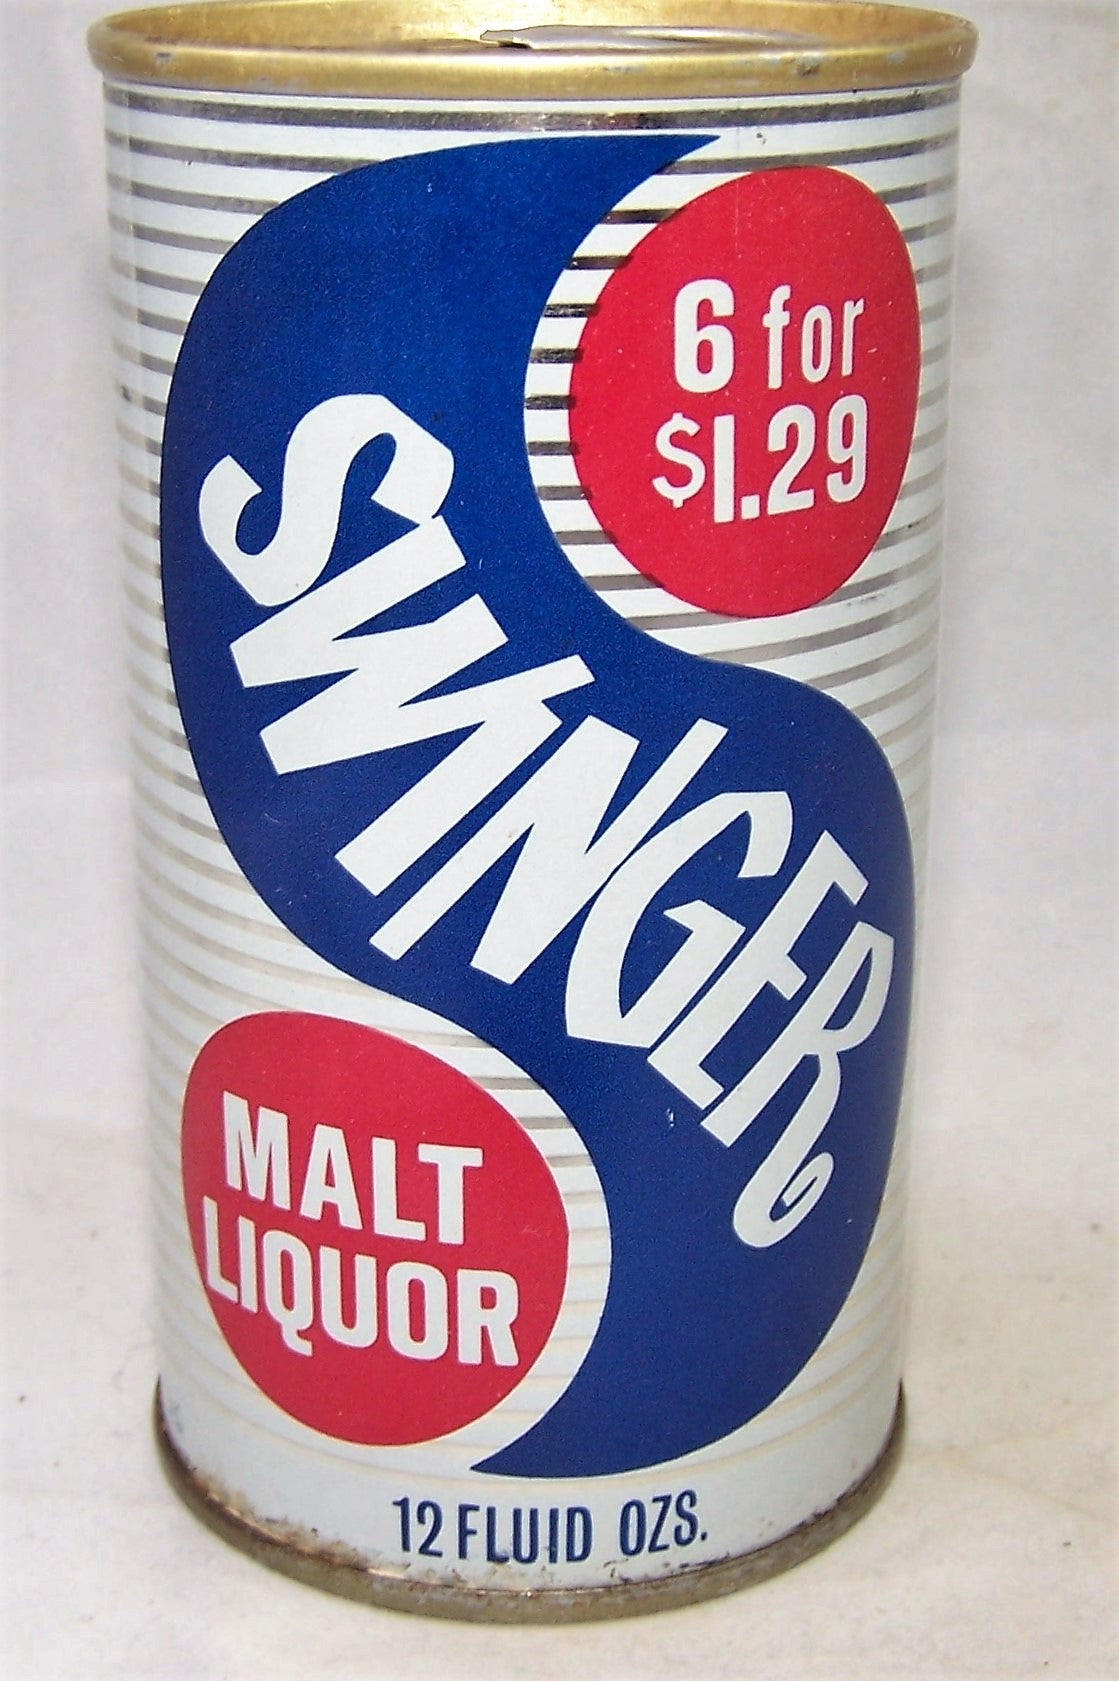 Swinger 6 for $1.29, USBC II 129-28, Grade 1 Sold on 05/02/19